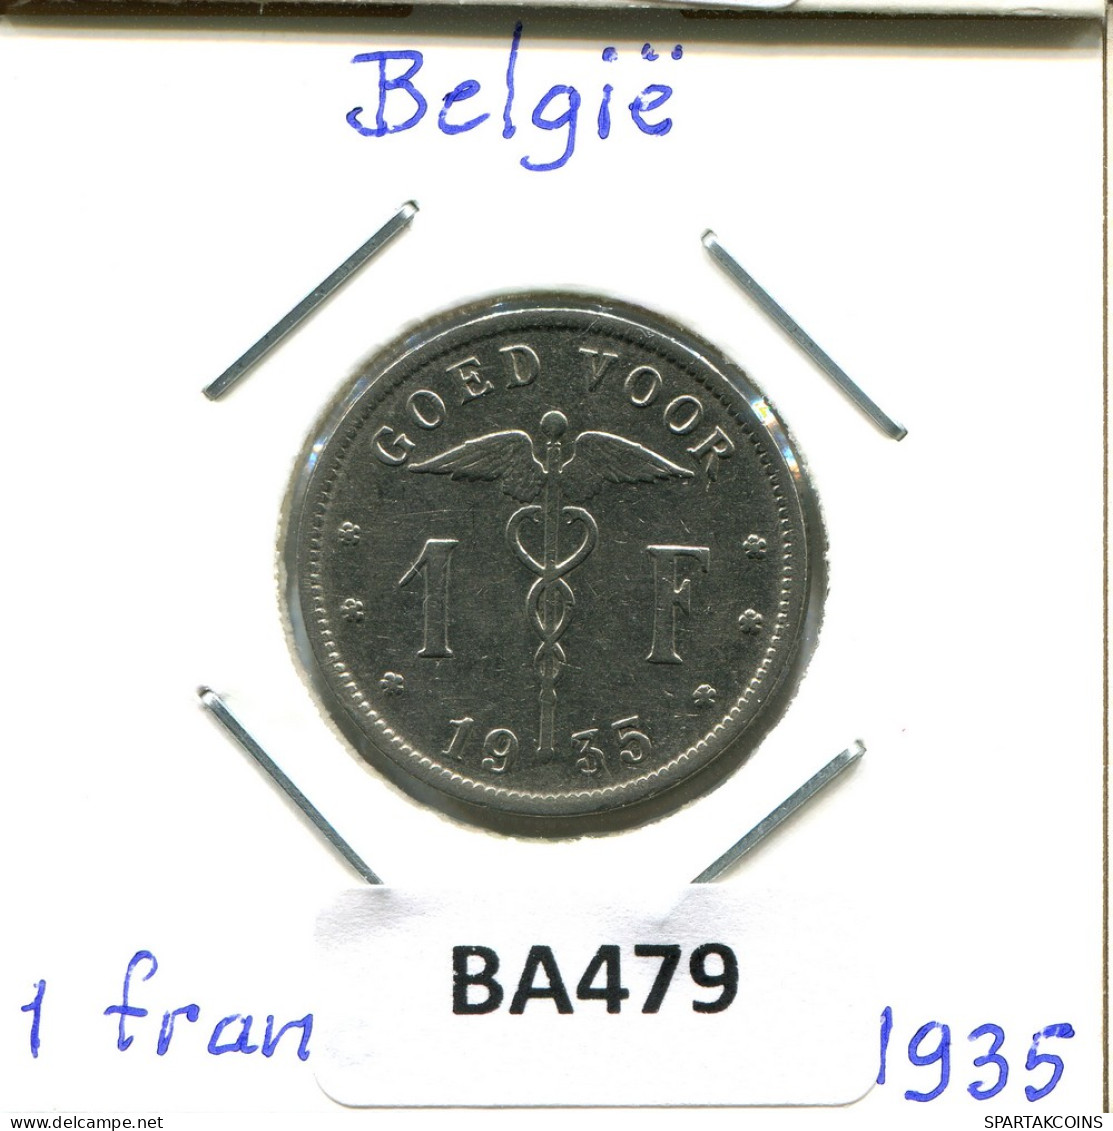 1 FRANC 1935 DUTCH Text BELGIUM Coin #BA479.U - 1 Franc